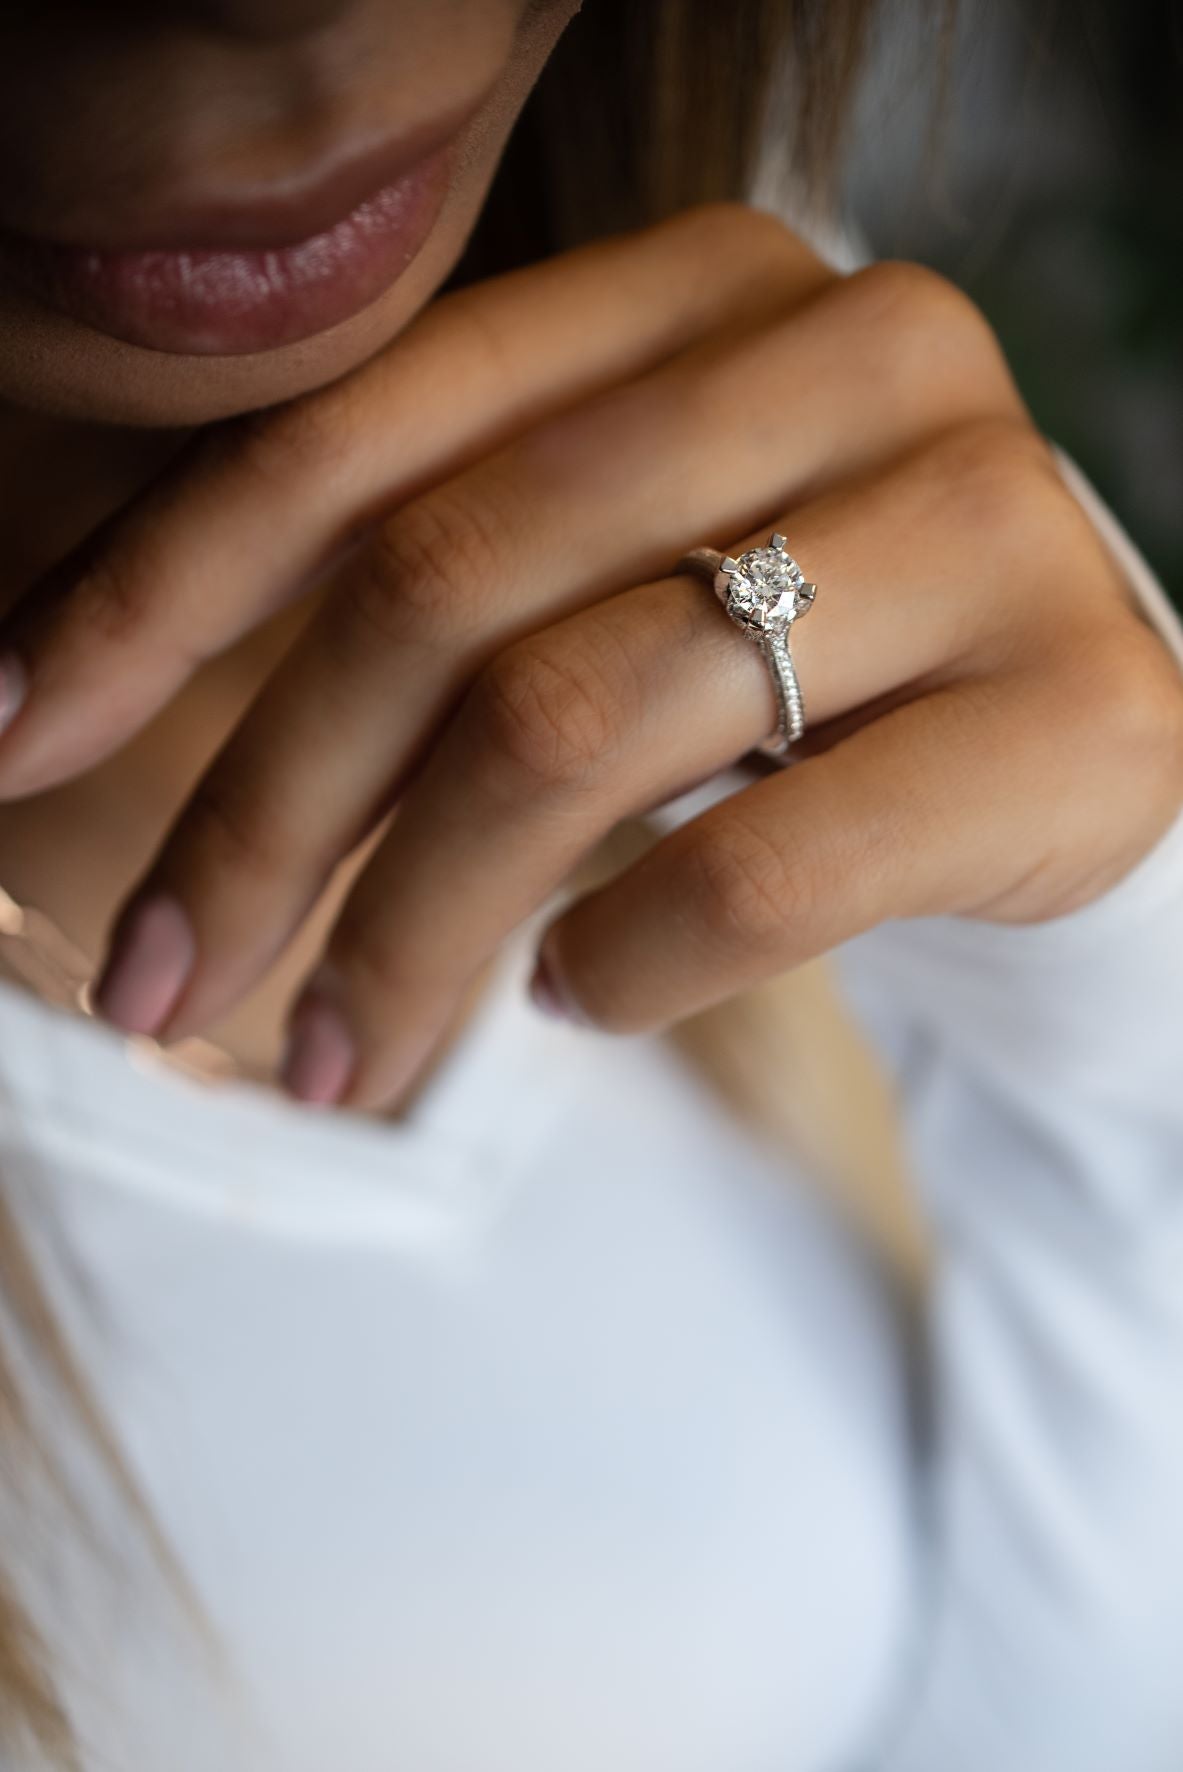 1.37 ctw Platinum Diamond Engagement Ring